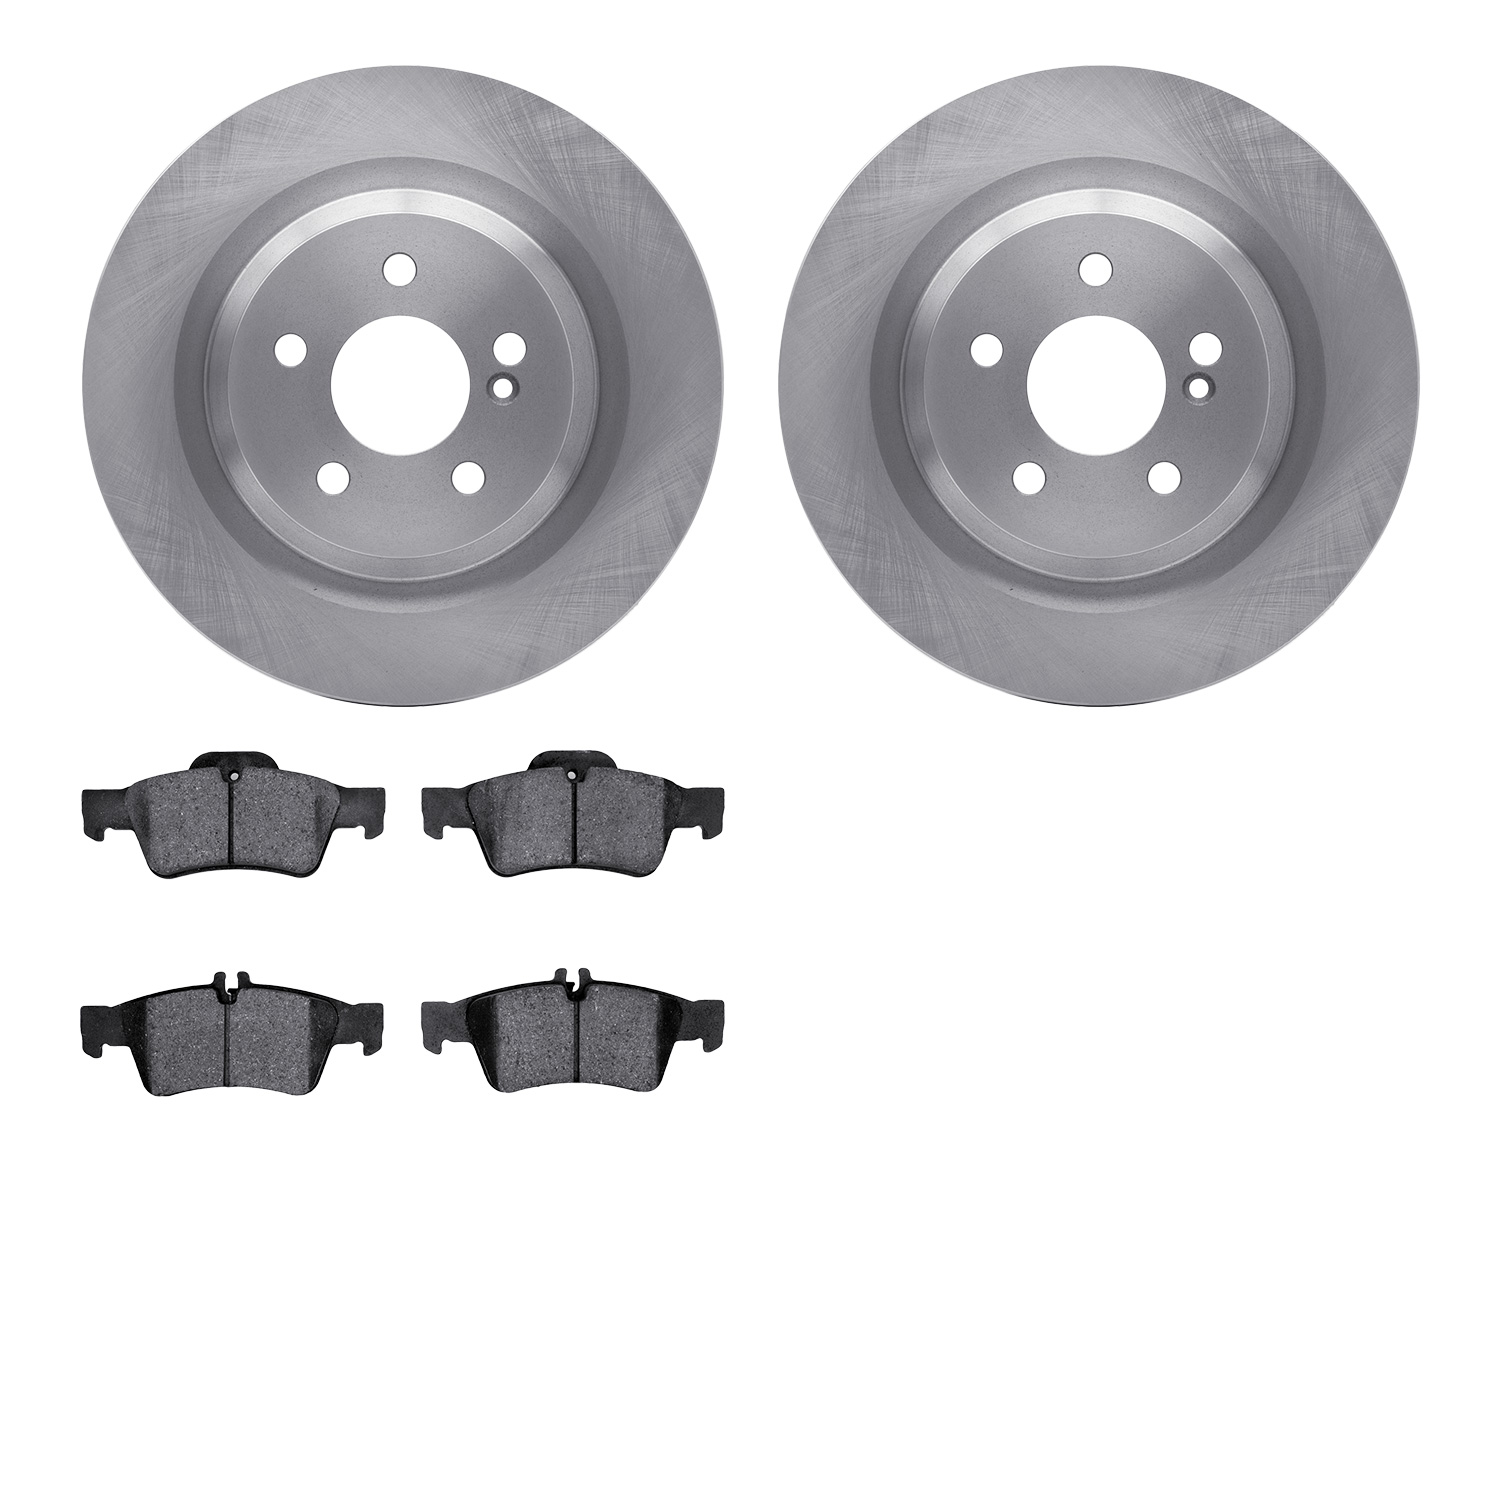 6502-63366 Brake Rotors w/5000 Advanced Brake Pads Kit, 2010-2014 Mercedes-Benz, Position: Rear